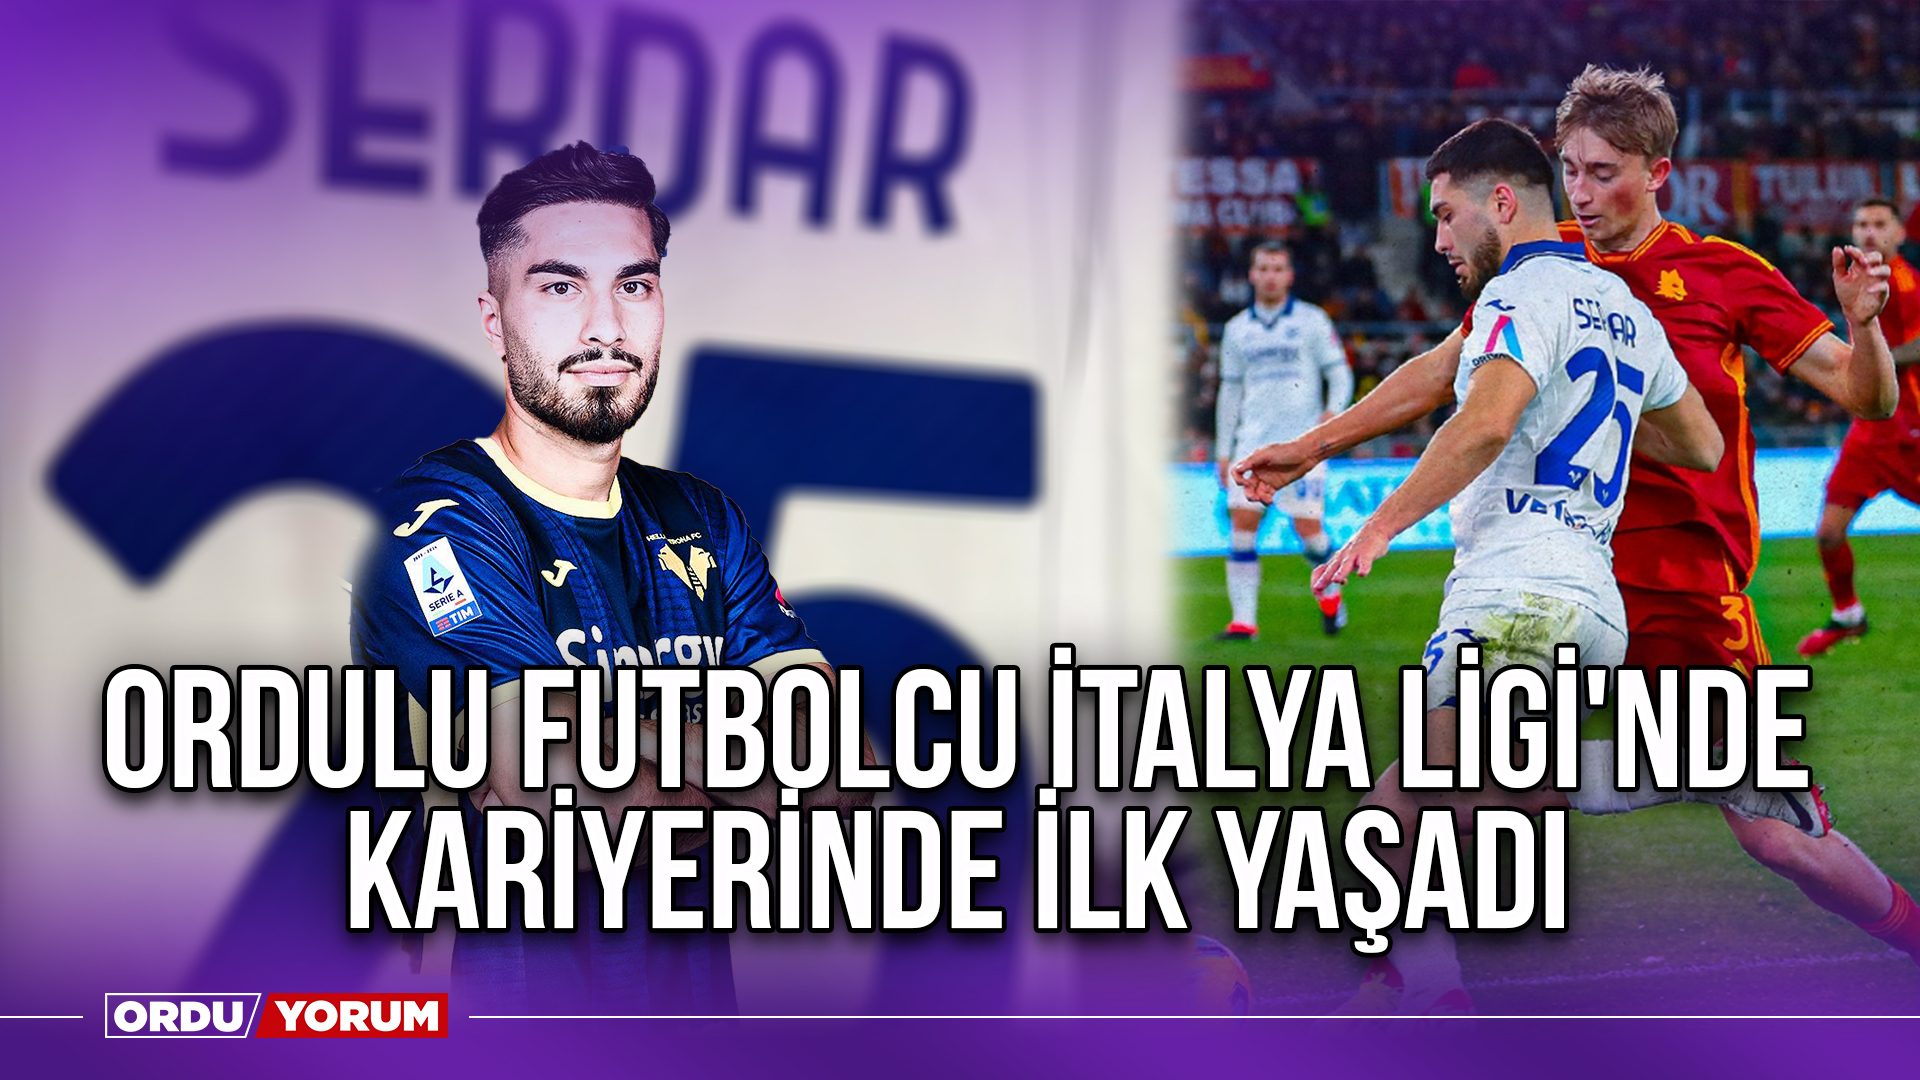 Il calciatore dell'Ordu ha fatto la sua prima carriera nel campionato italiano – Ordu Last Minute News – Giornale Ordu Yorum